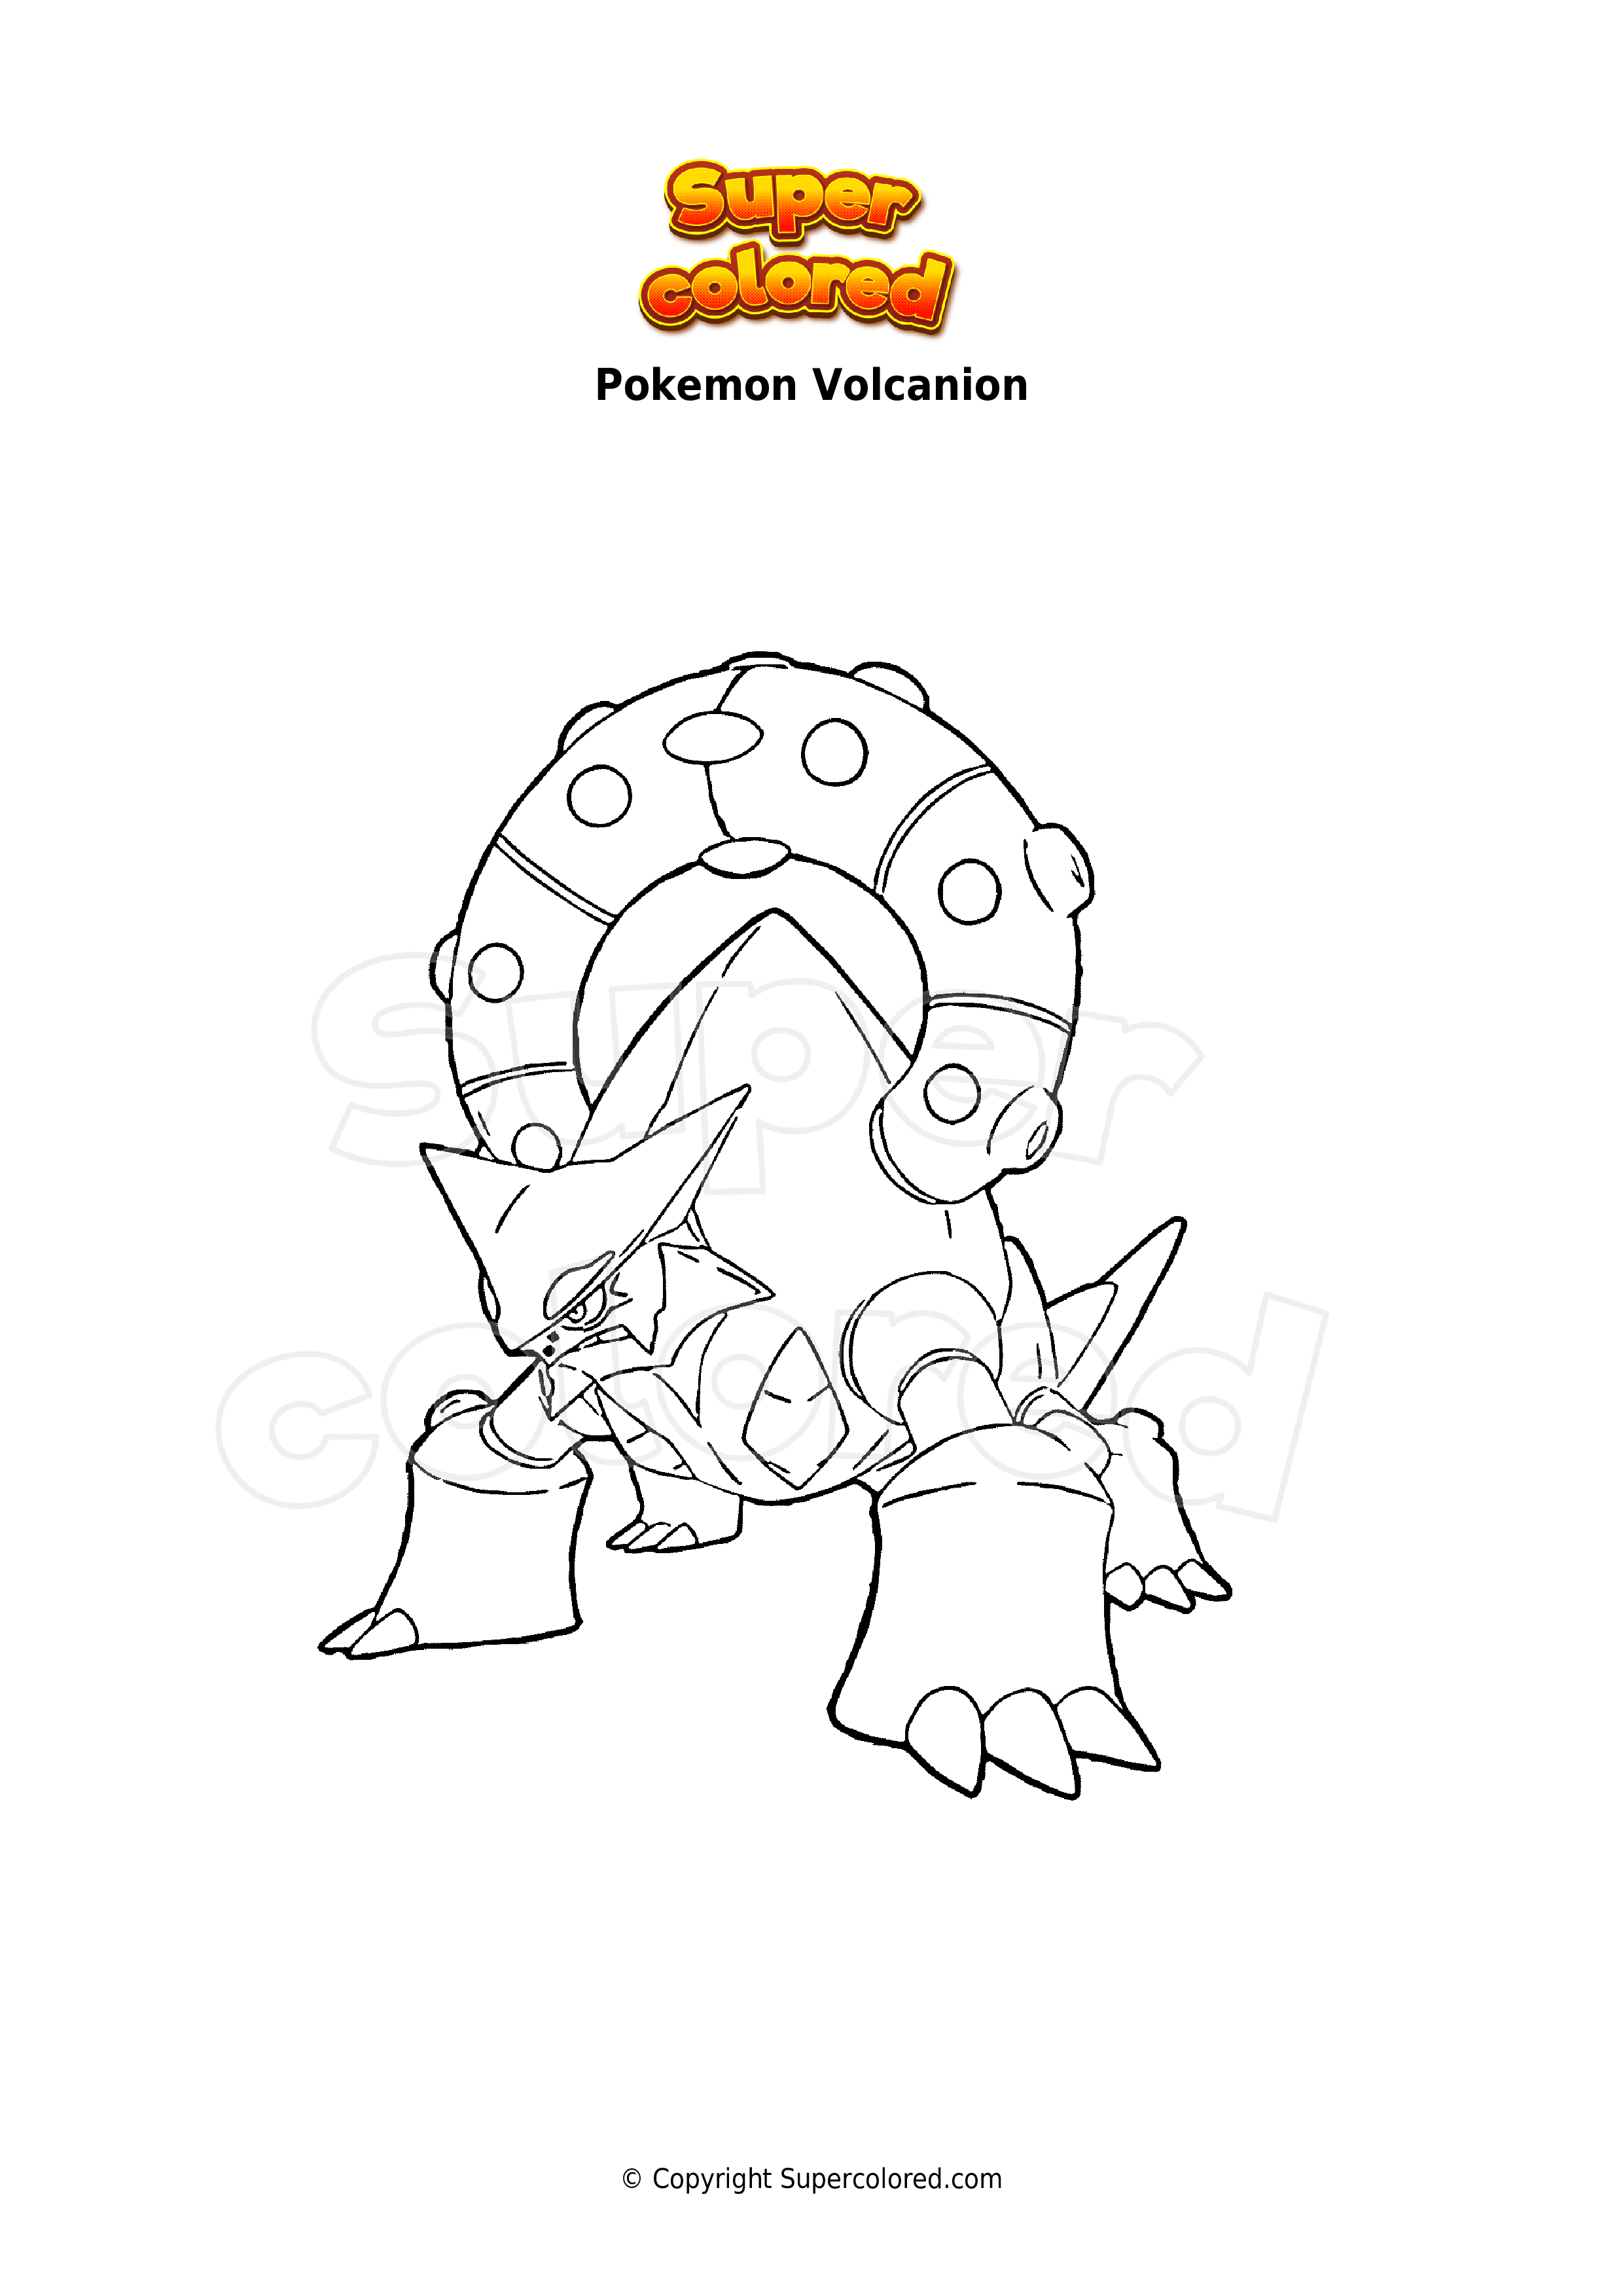 Coloring page Pokemon Volcanion - Supercolored.com